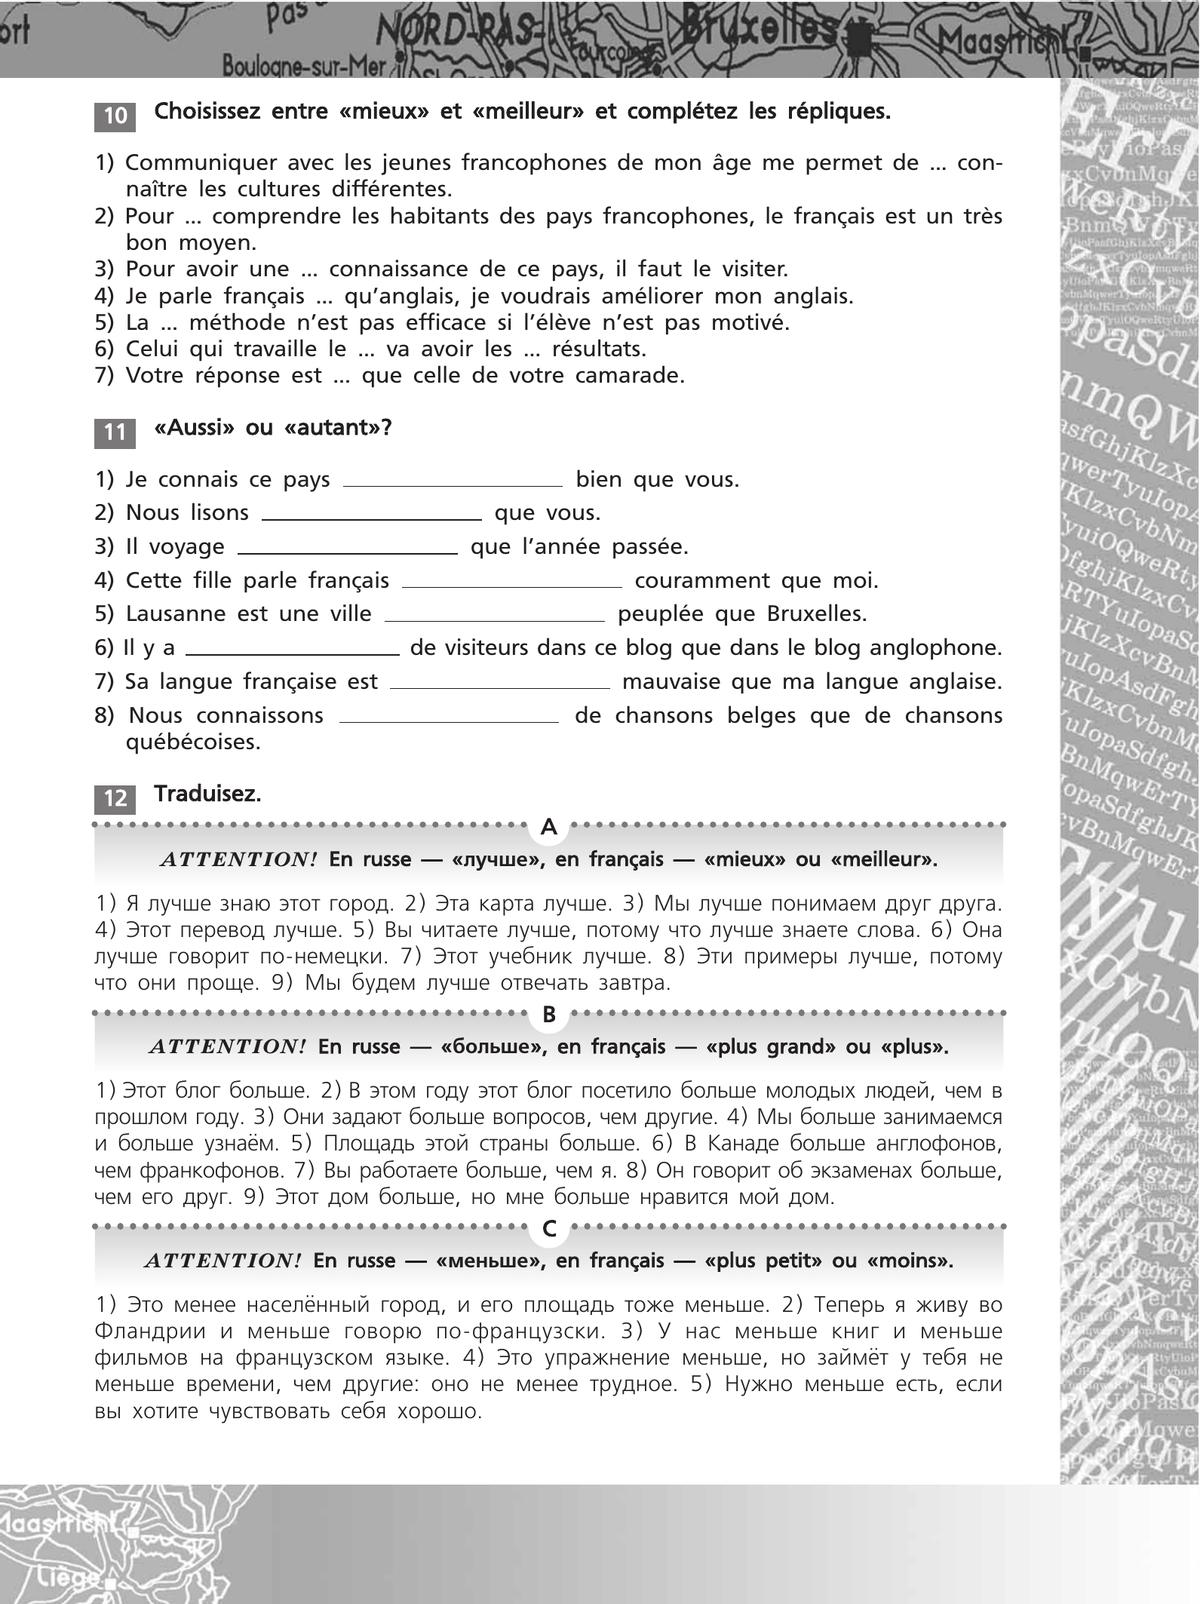 Французский язык. Второй иностранный язык. Сборник упражнений. 8-9 классы (второй и третий годы обучения) 8